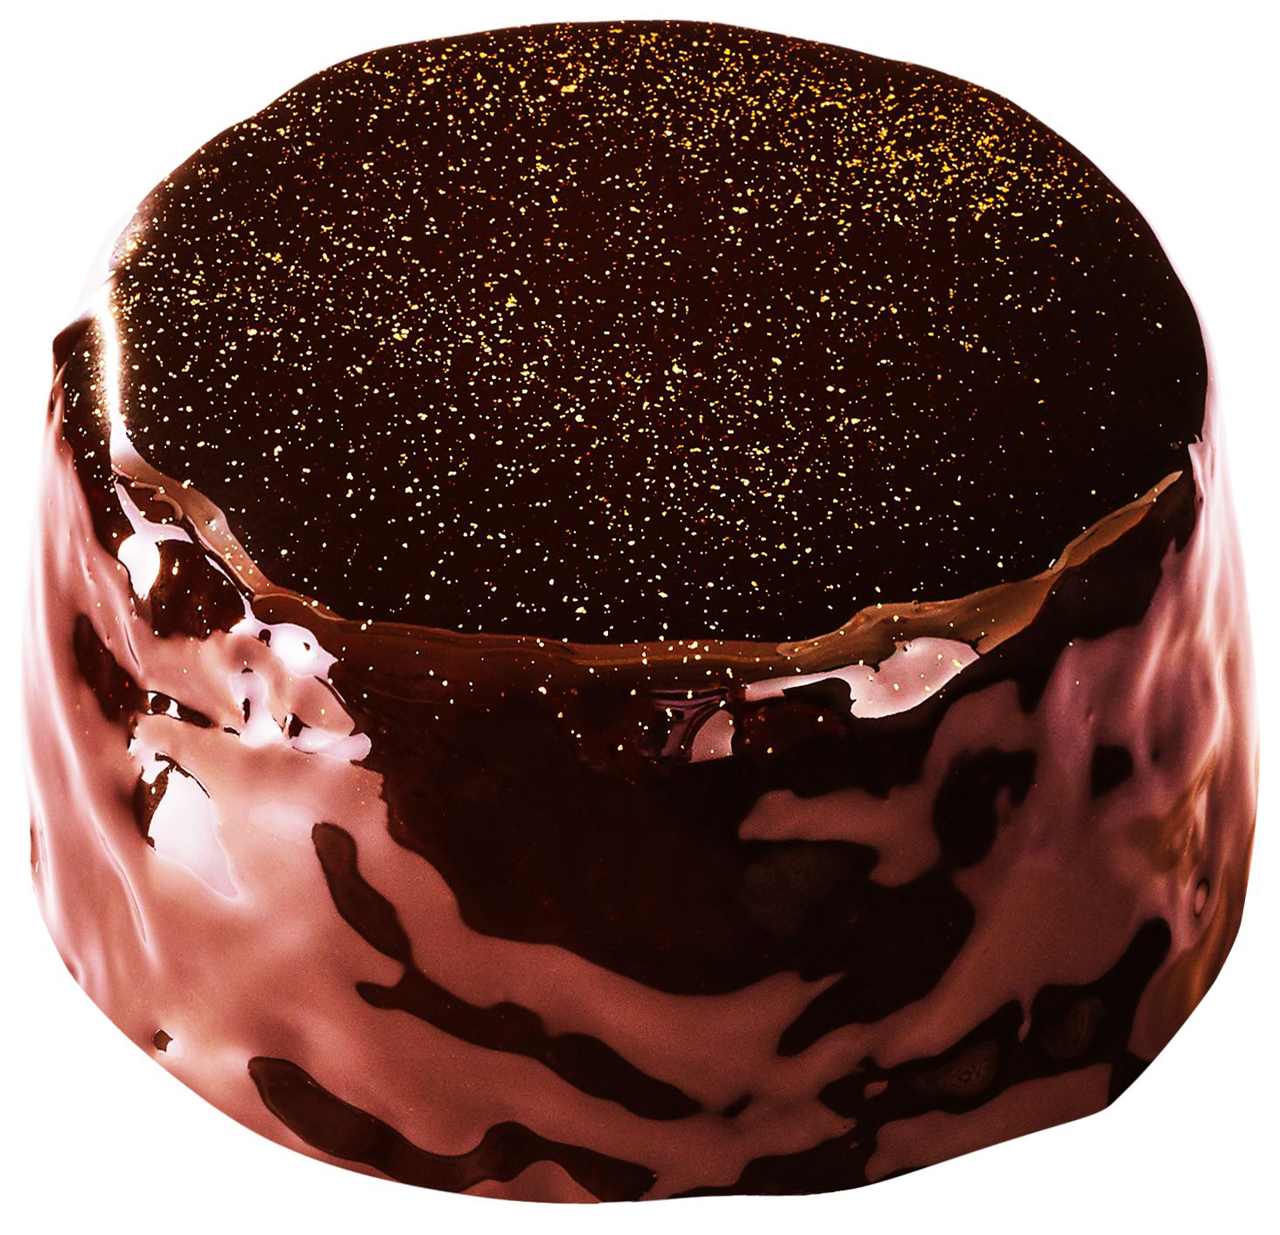 「煌めきショコラ」420円(税込)。チョコレートでコーティングした濃厚なチョコレートケーキ